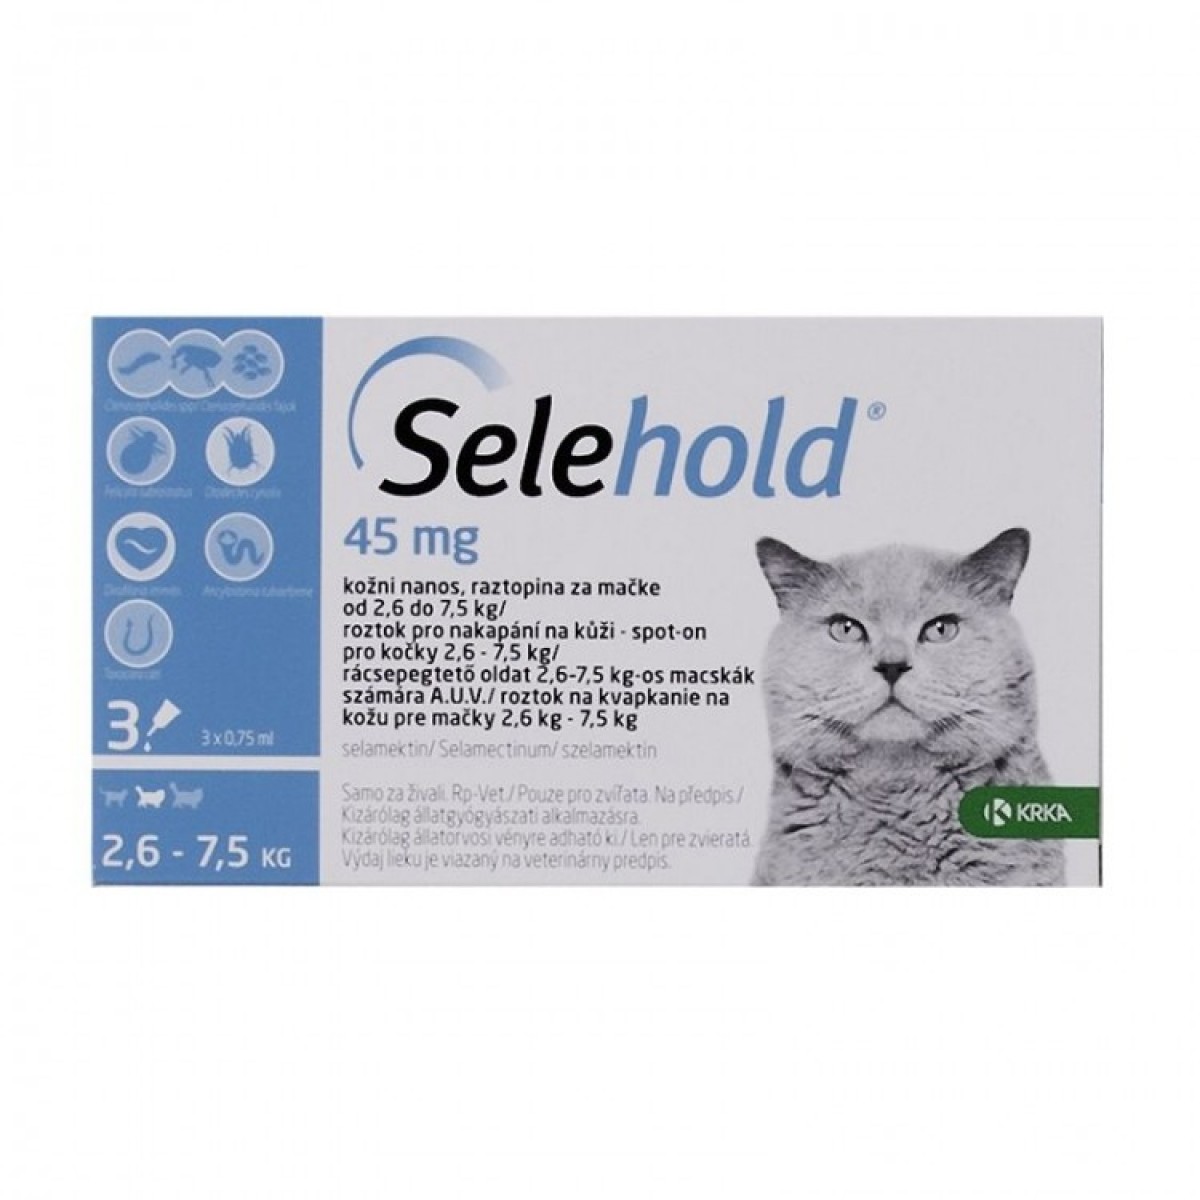 Selehold pentru pisici între 2.6-7.5kg, 3 pipete antiparazitare, Antiparazitare externe, Antiparazitare, Pisici 